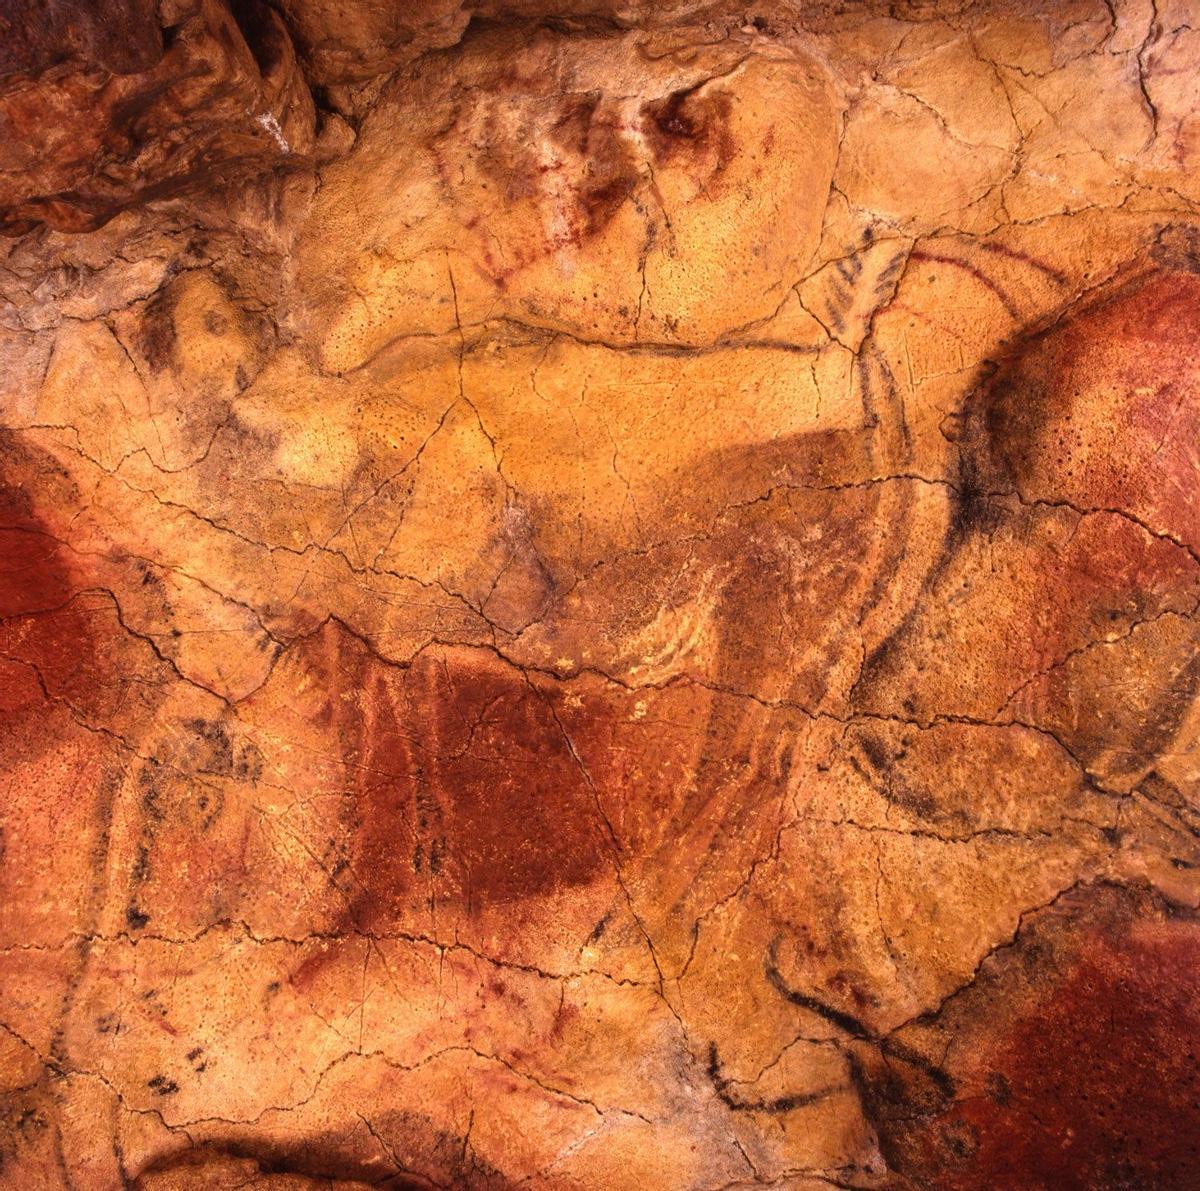 Cueva de Altamira y arte rupestre paleolítico del norte de España